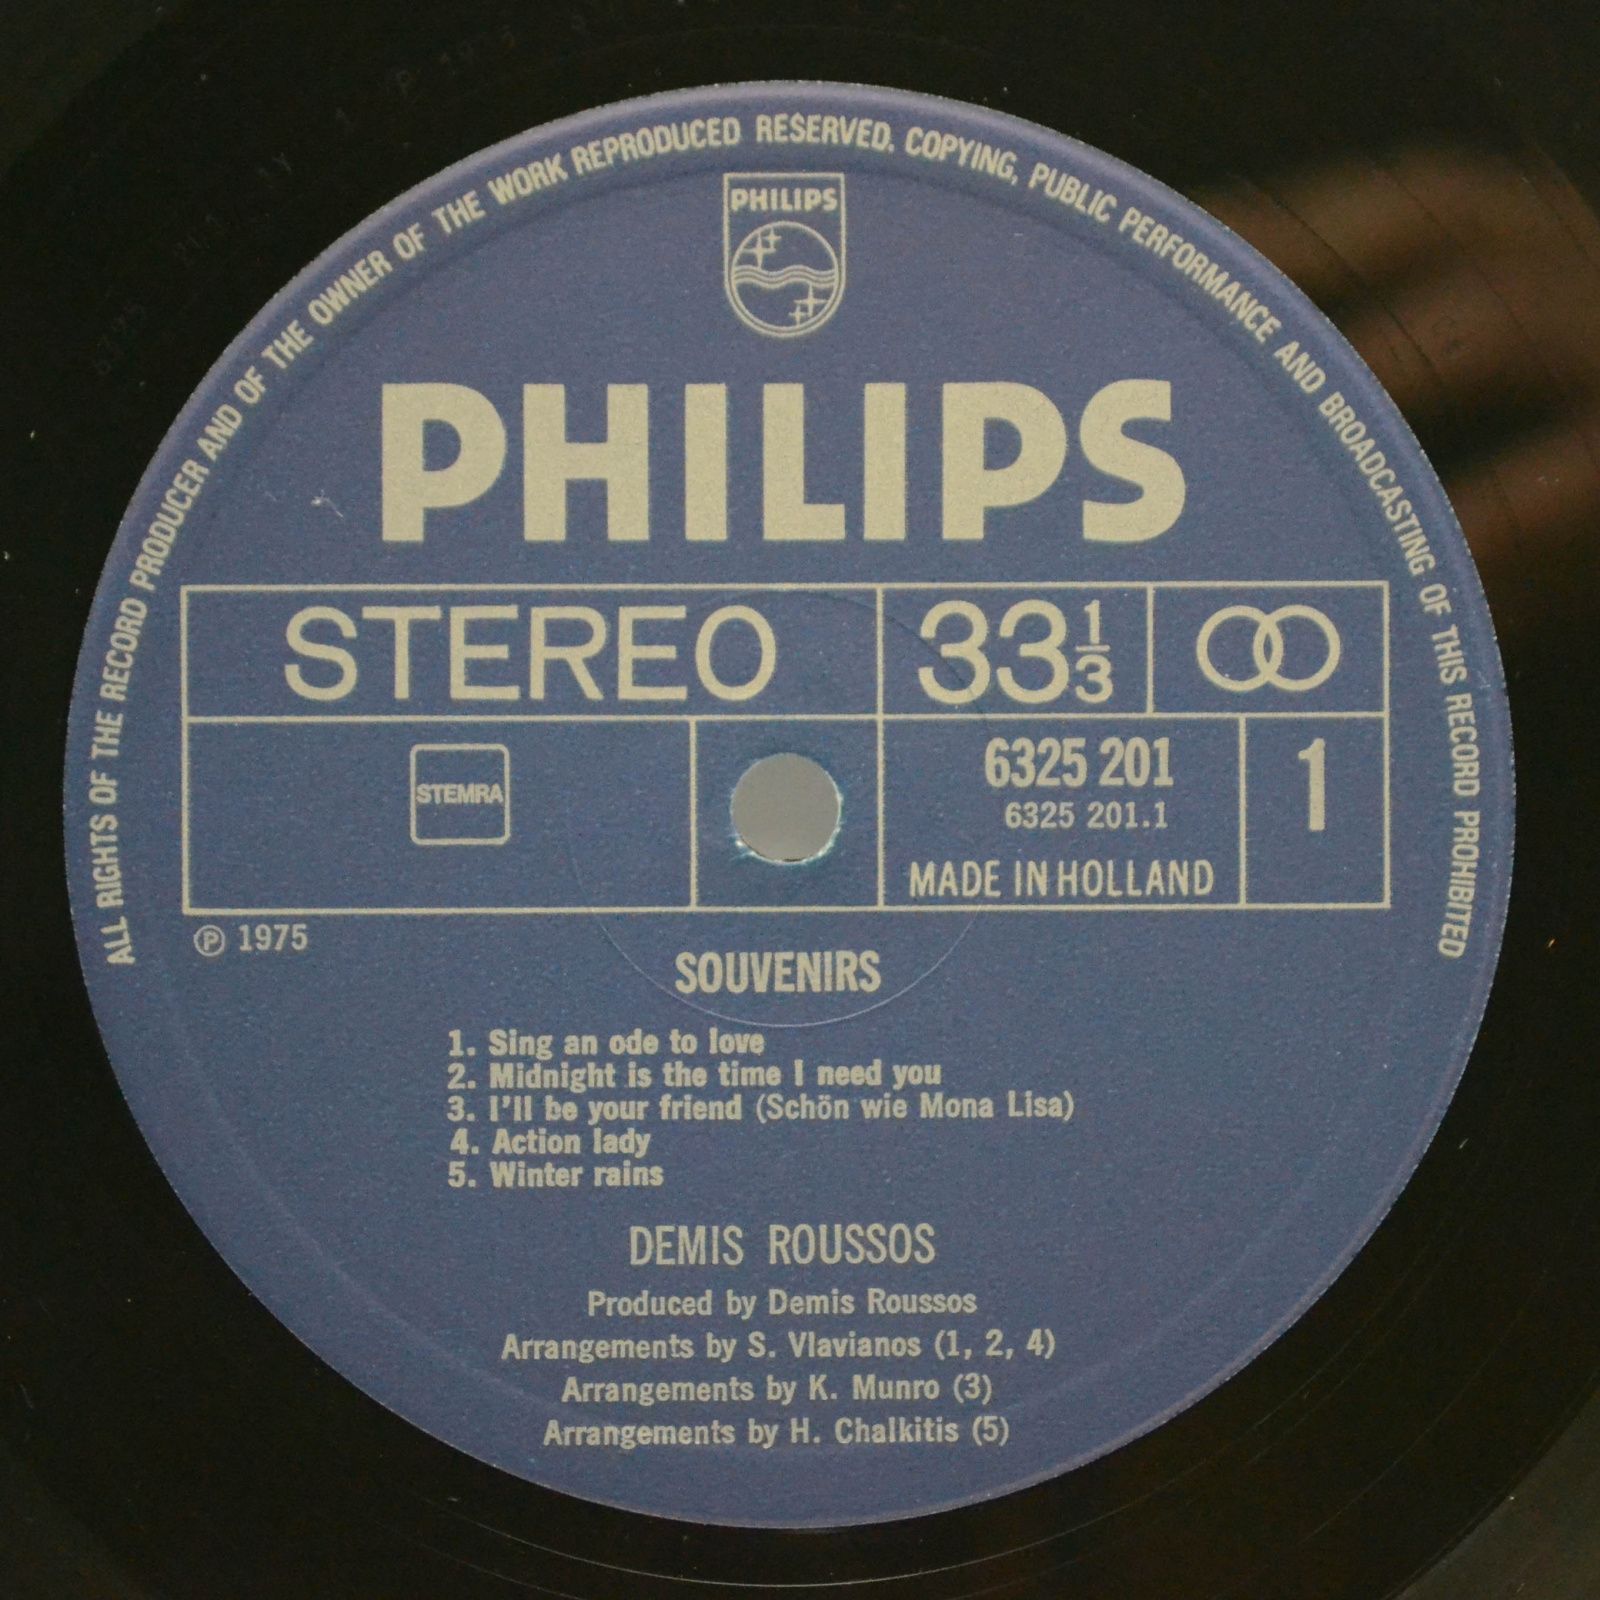 Démis Roussos — Souvenirs, 1975